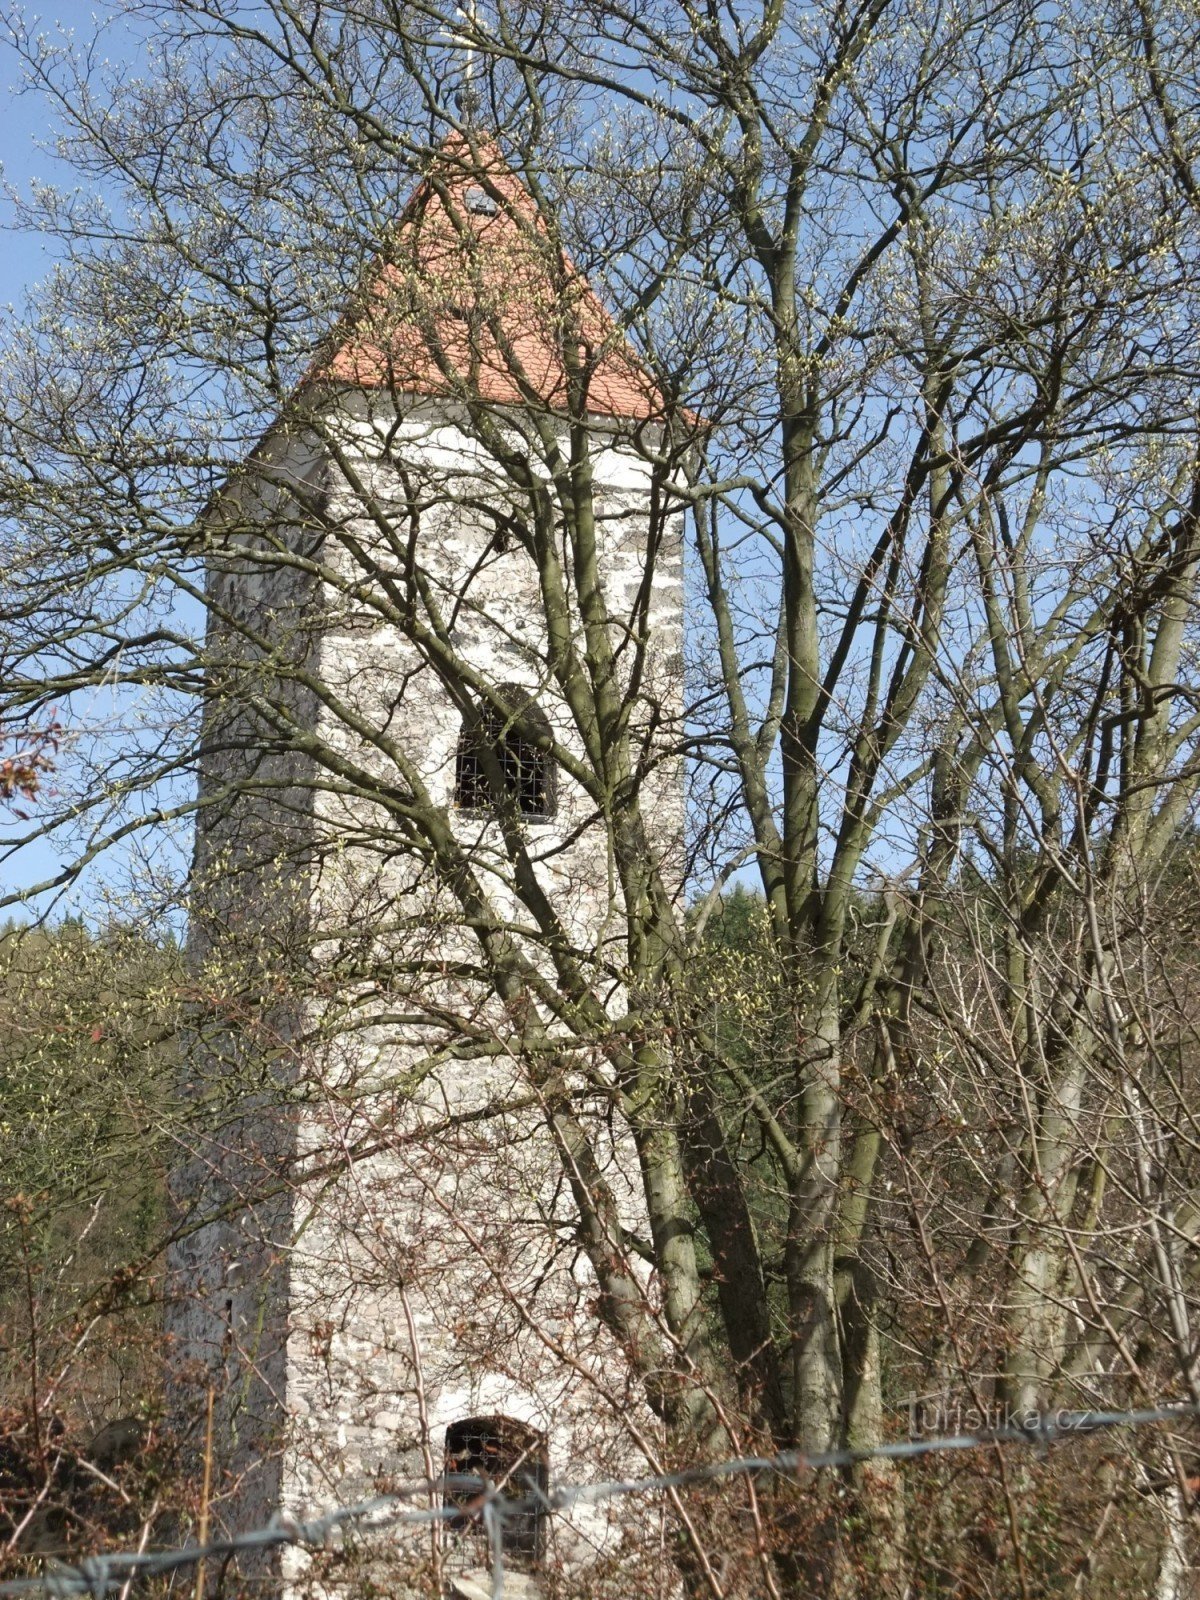 Tháp lâu đài ở Nejdek